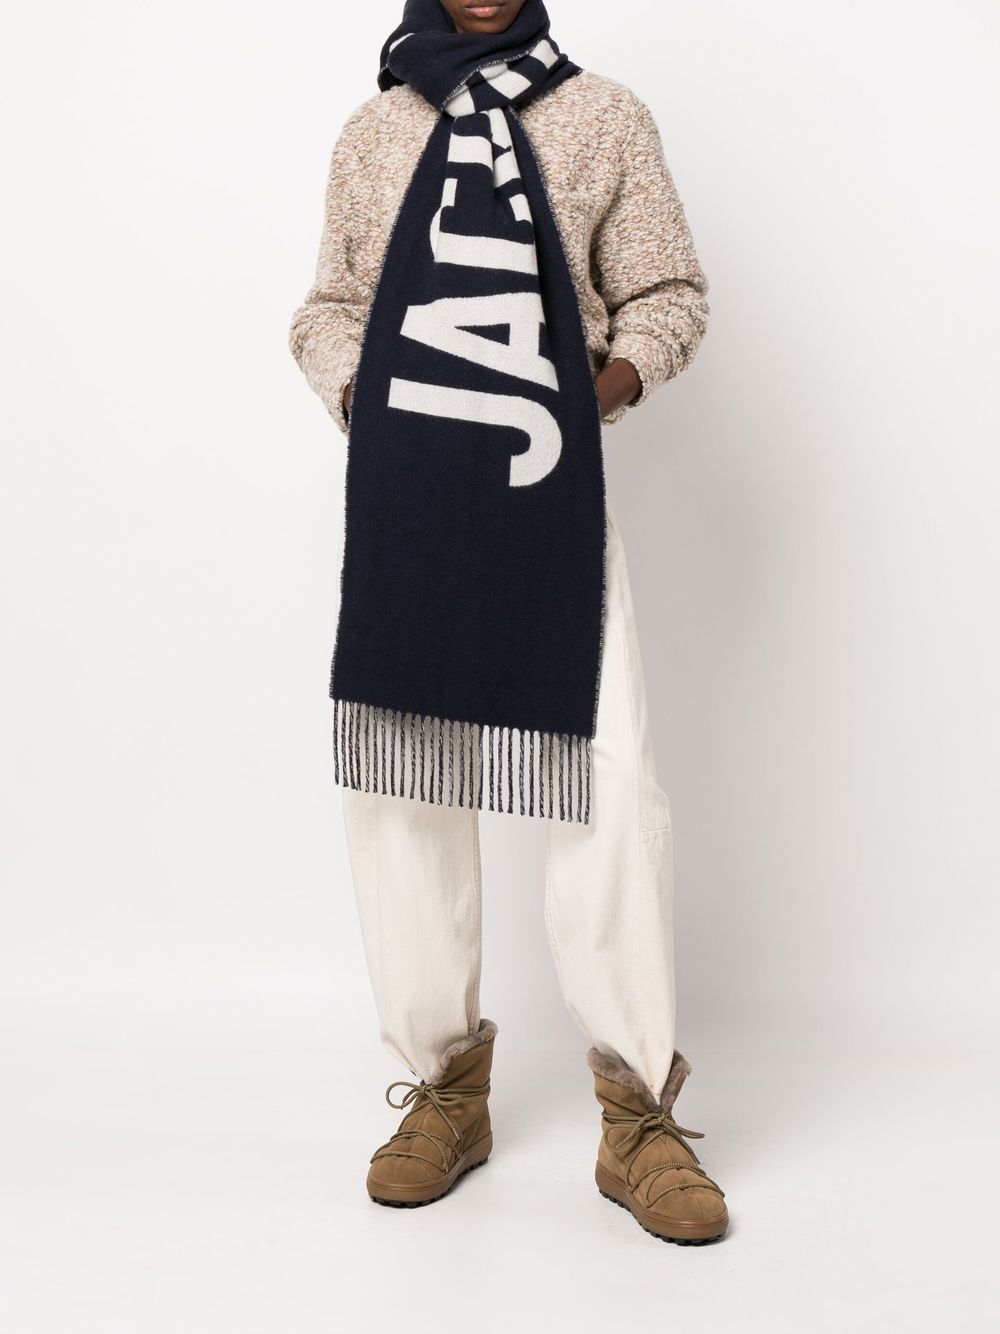 Який шарф купити для зими